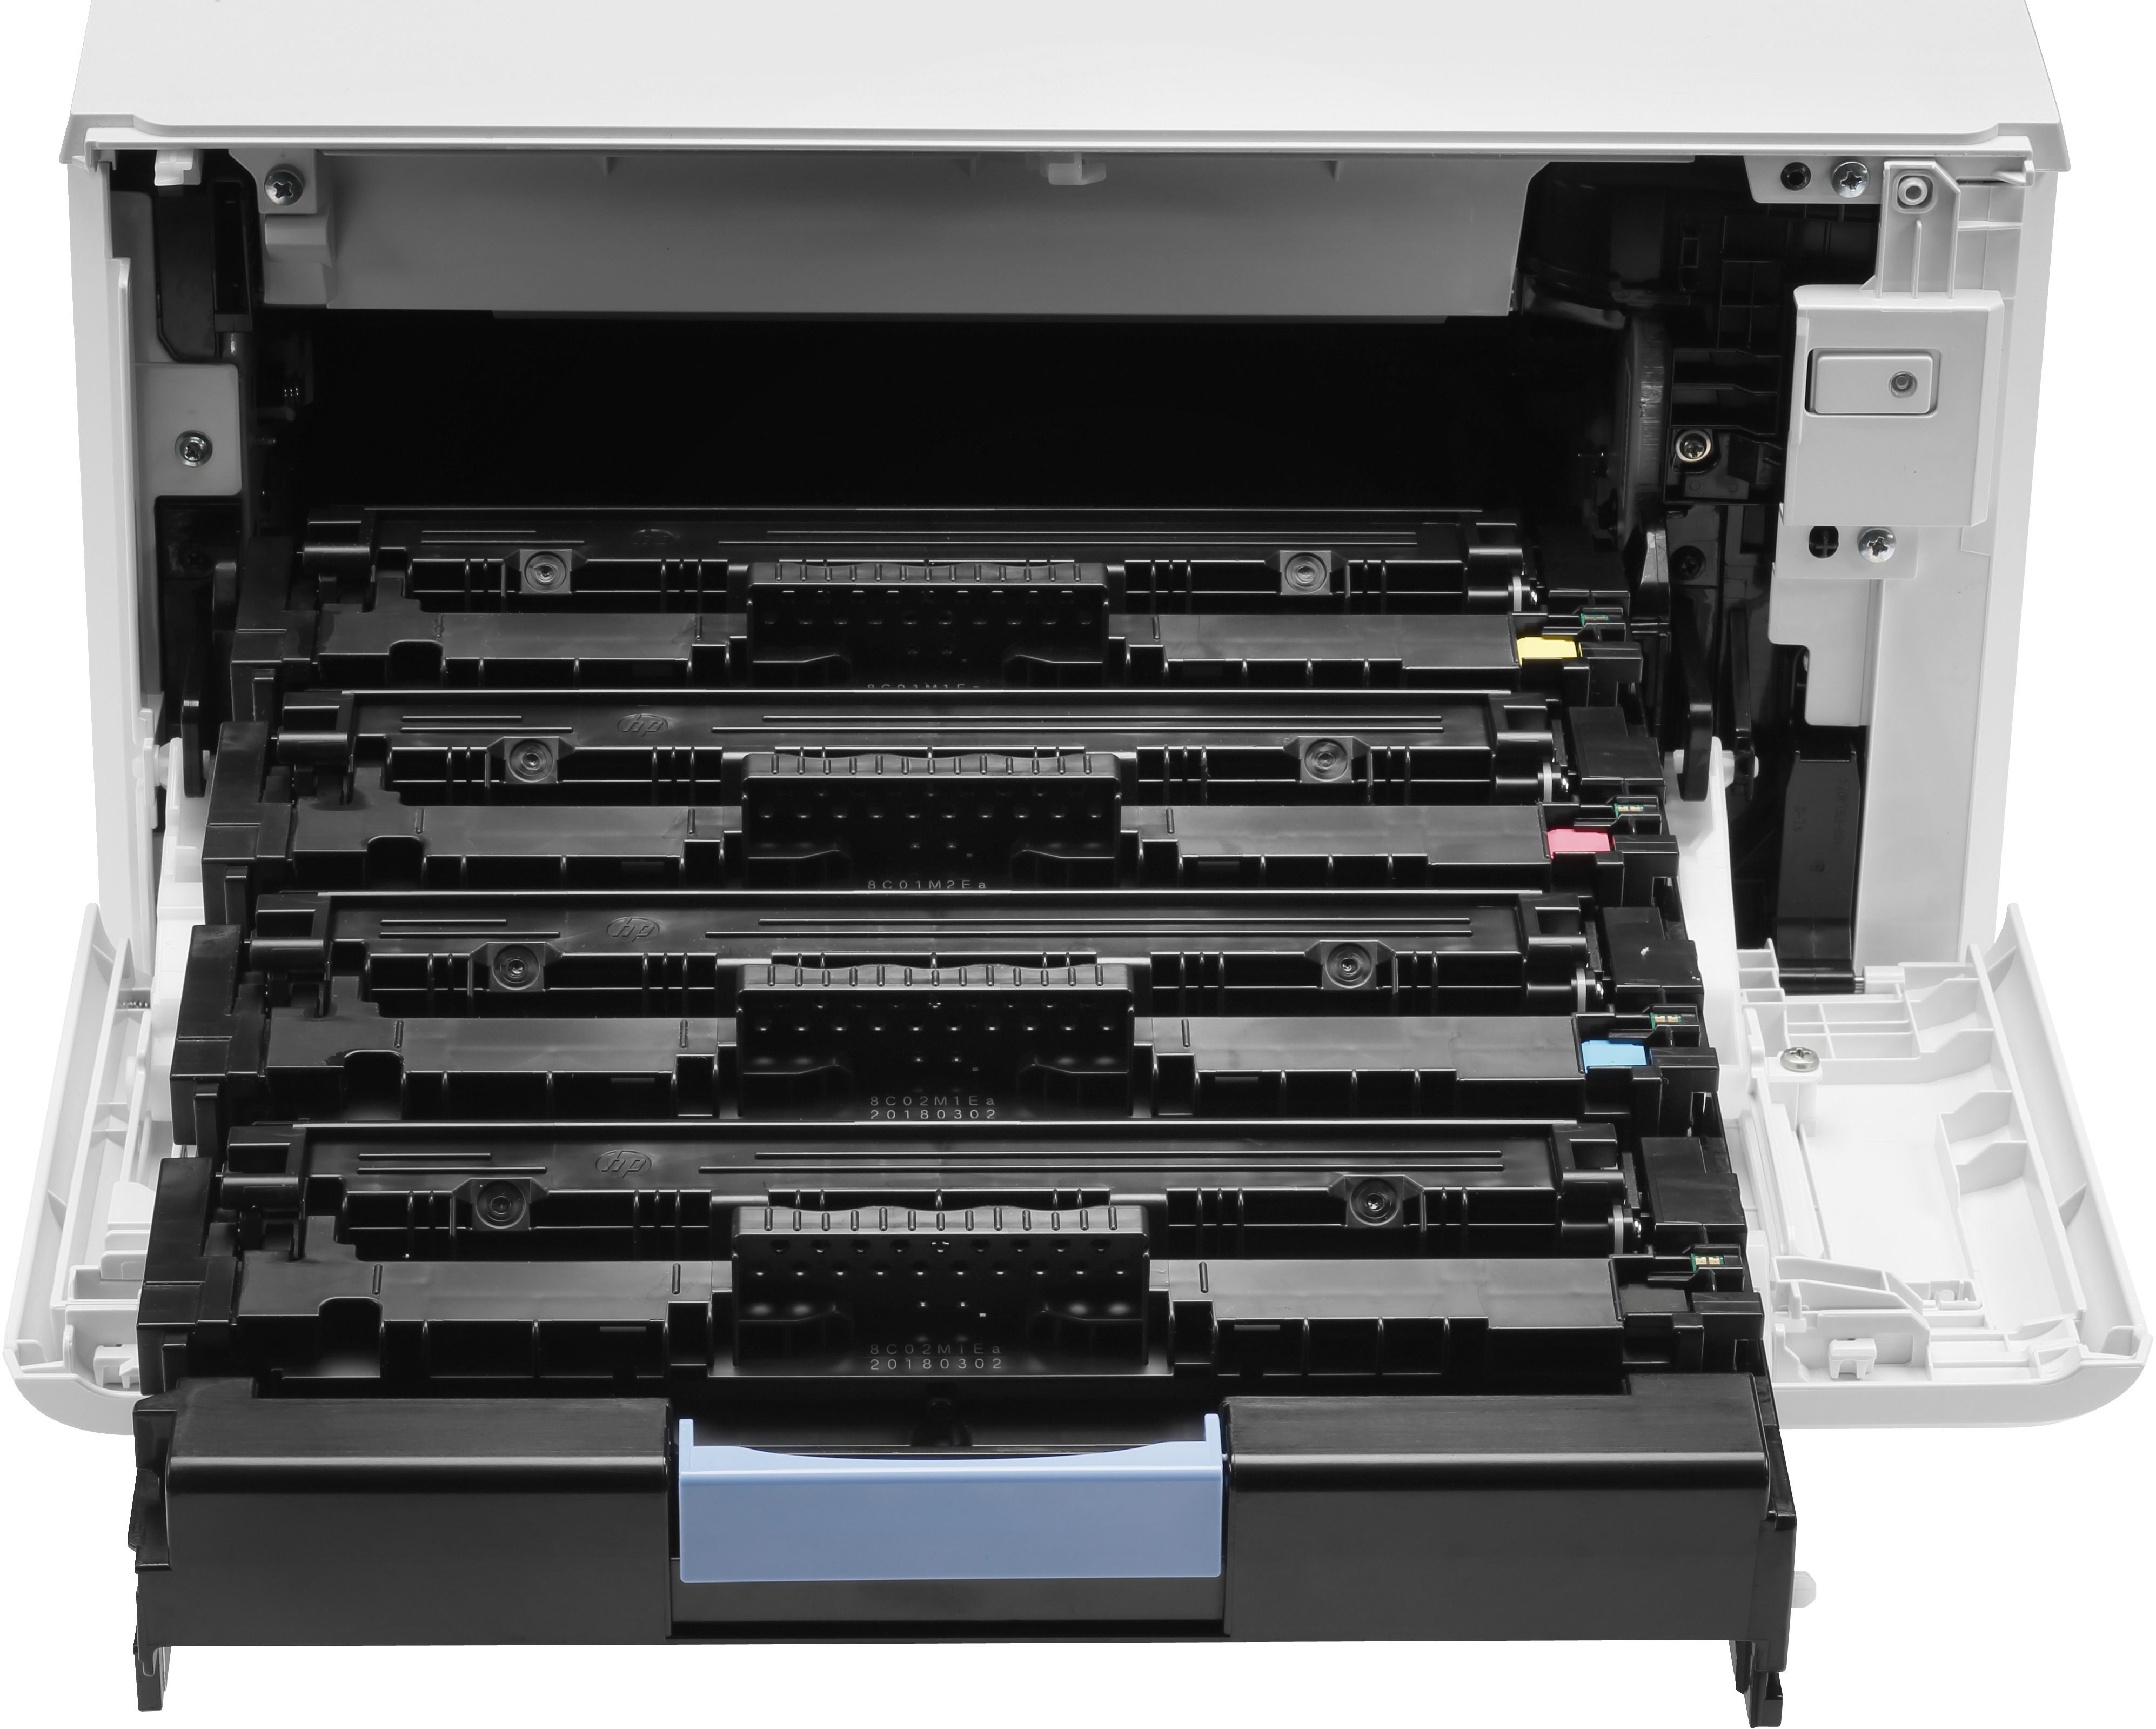 HP Color LaserJet Pro MFP M479fdw - Multifunktionsdrucker - Farbe - Laser - Legal (216 x 356 mm)